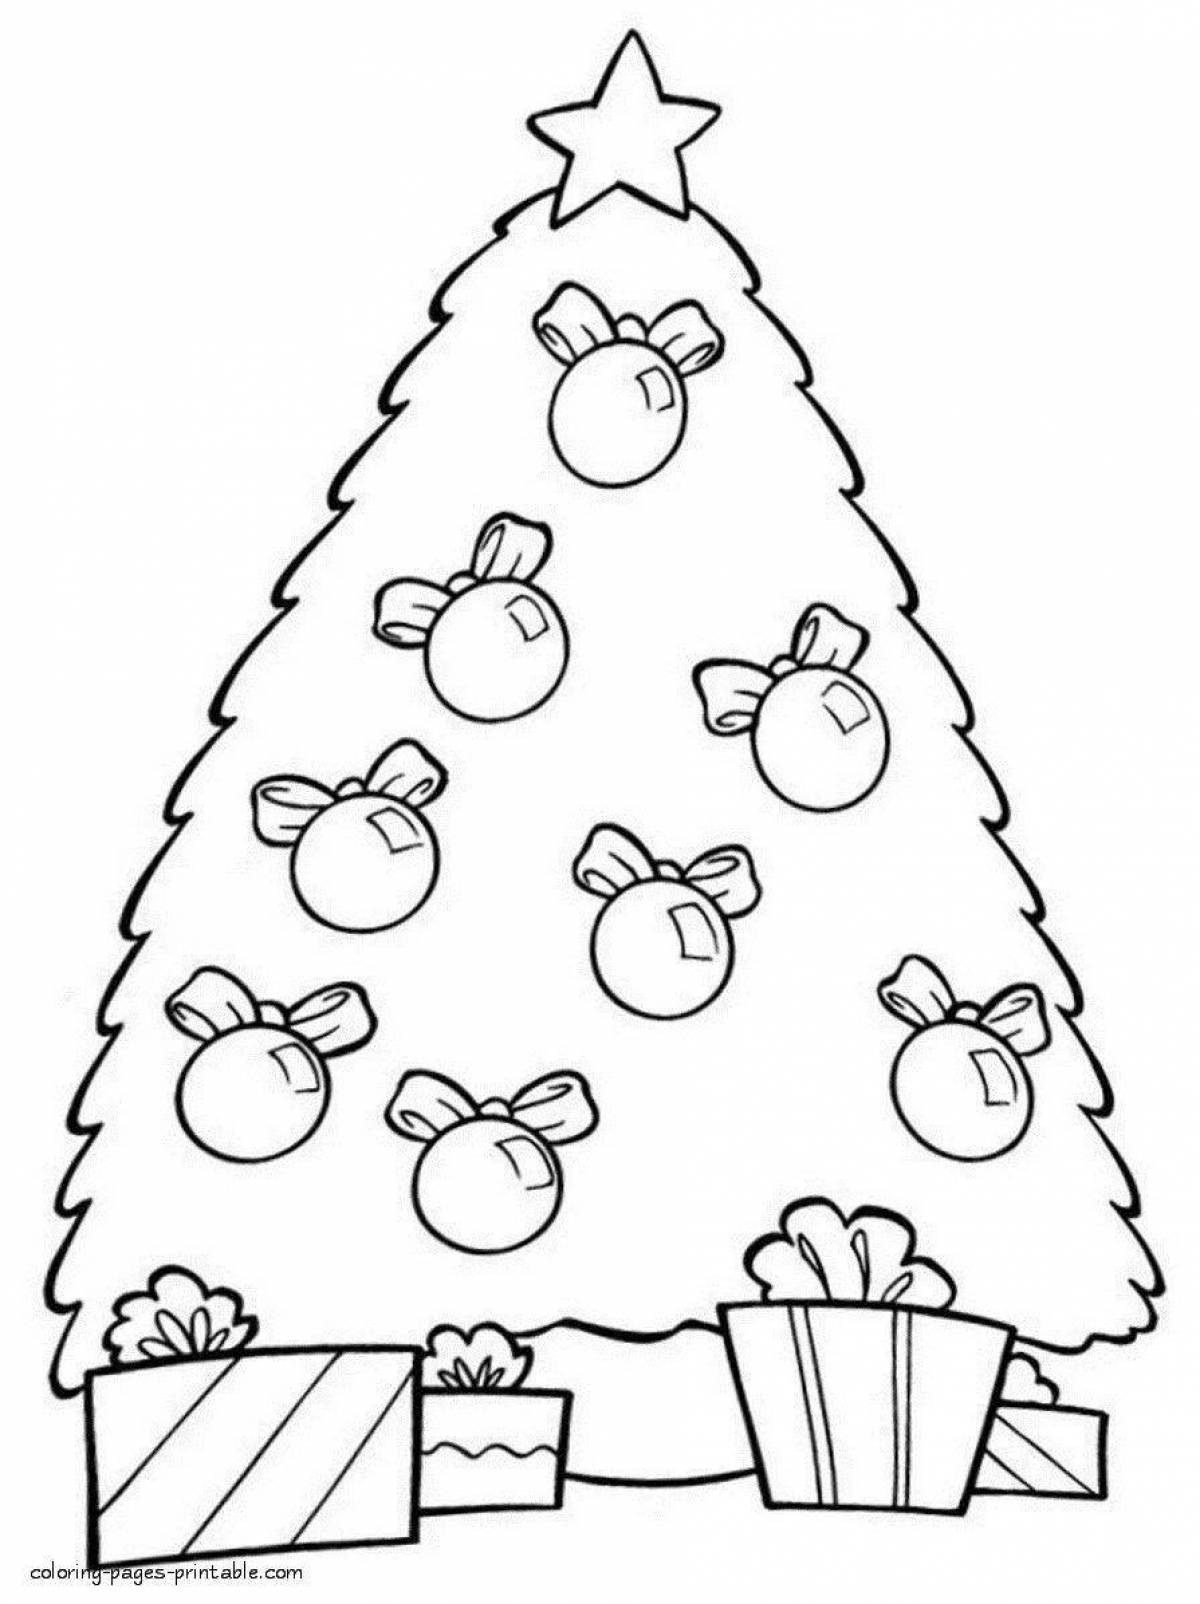 Красочная страница раскраски рождественской елки для самых маленьких